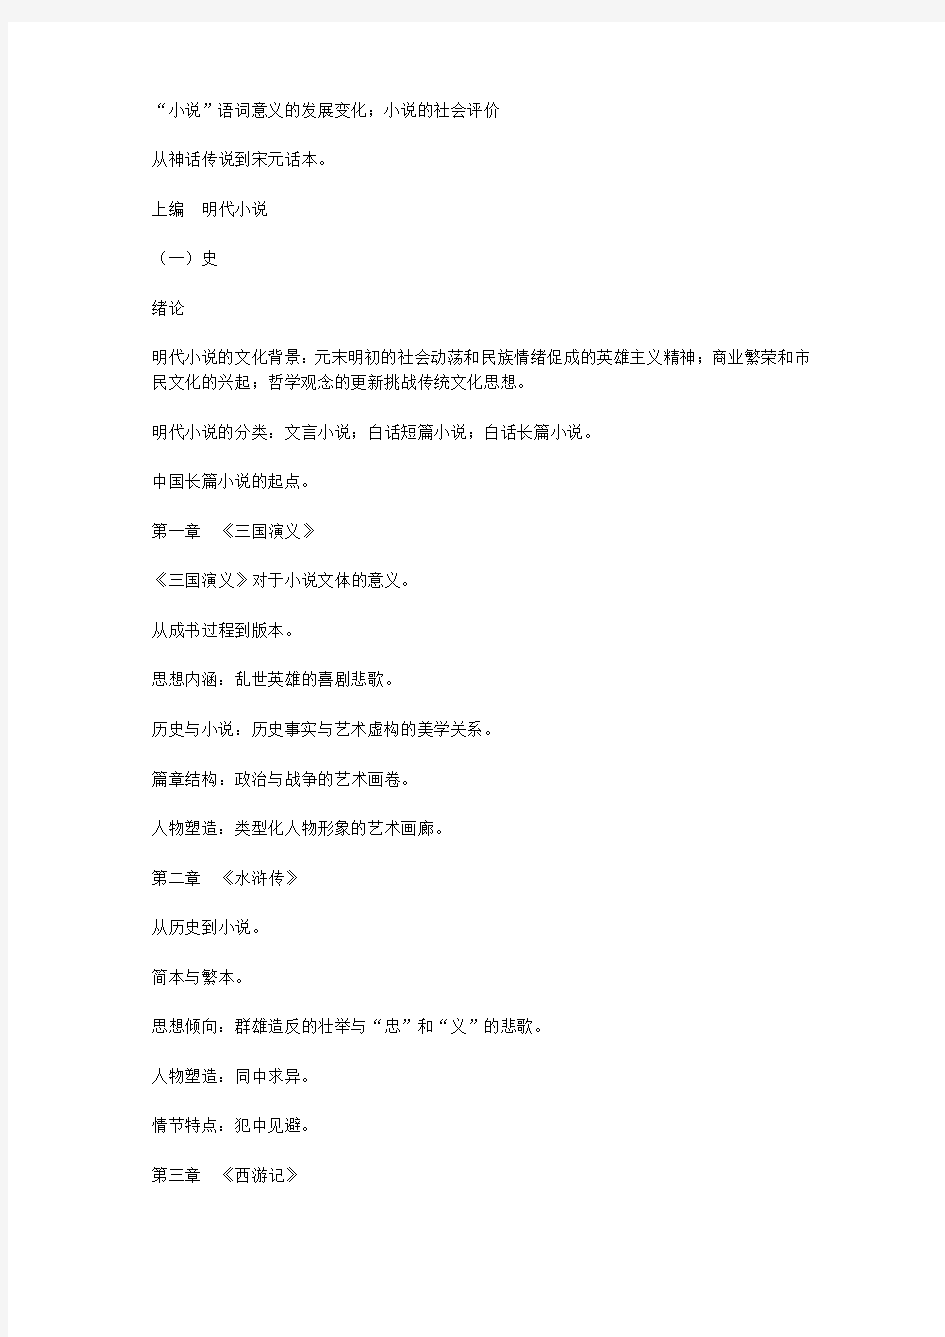 明清小说史专题是汉语言文学专业(本科)开设的一门专...